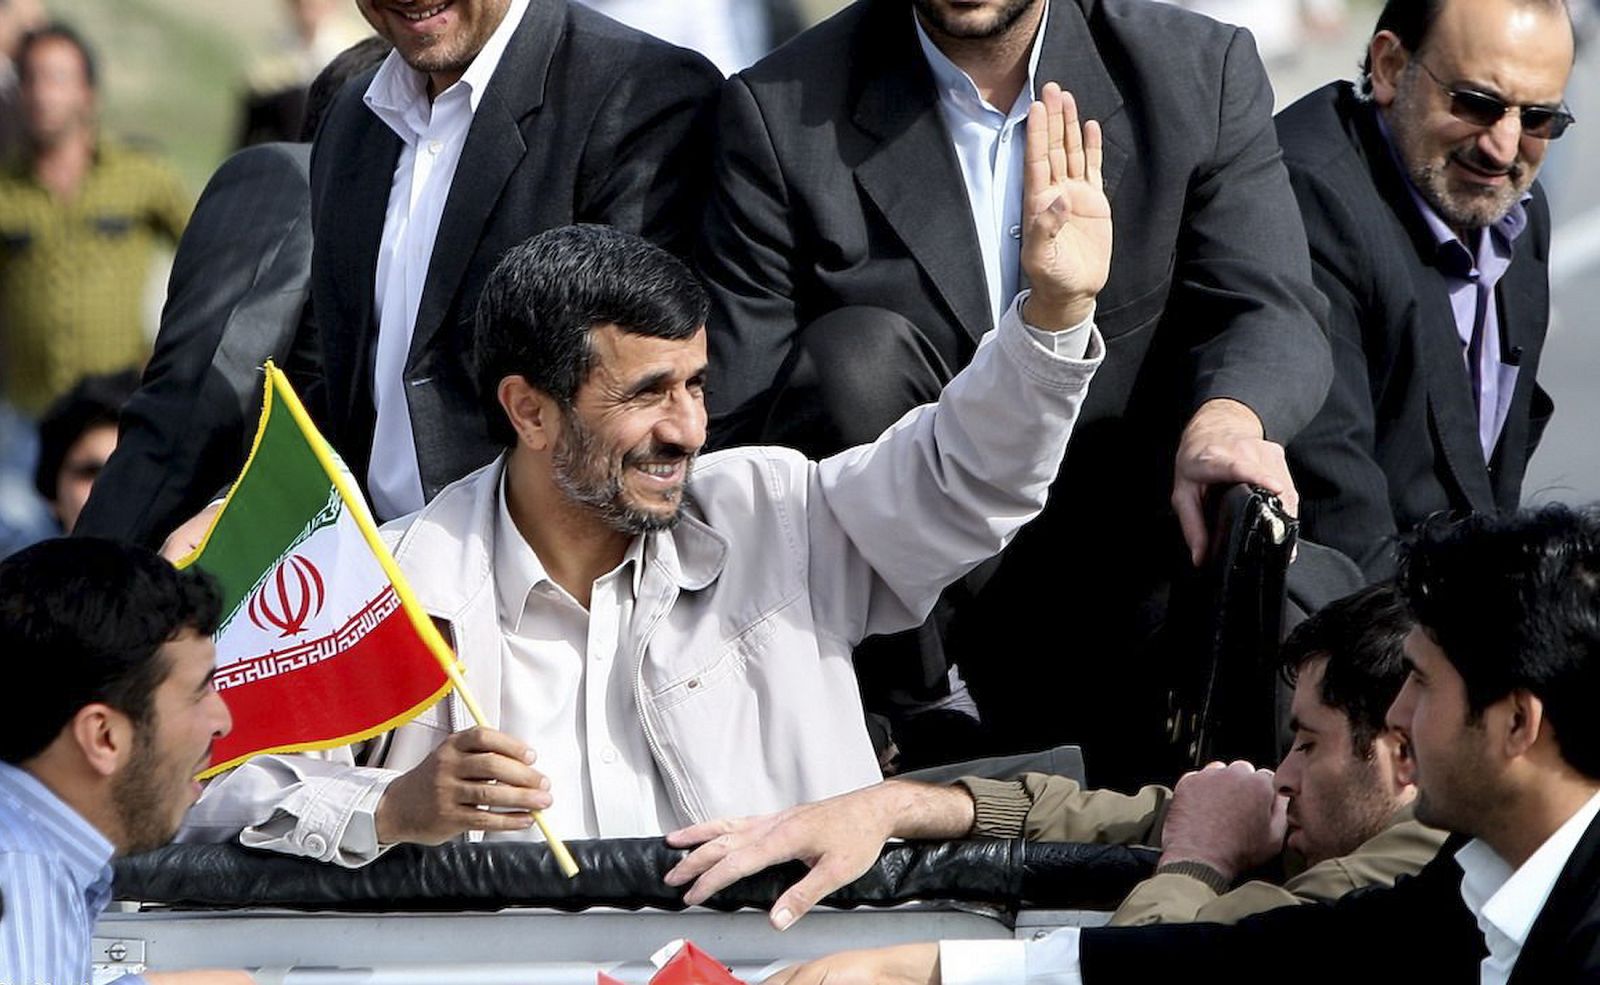 El presidente iraní Ahmadineyad sostiene una bandera mientras saluda a una multitud en un viaje a la pronvia de Orumieh.